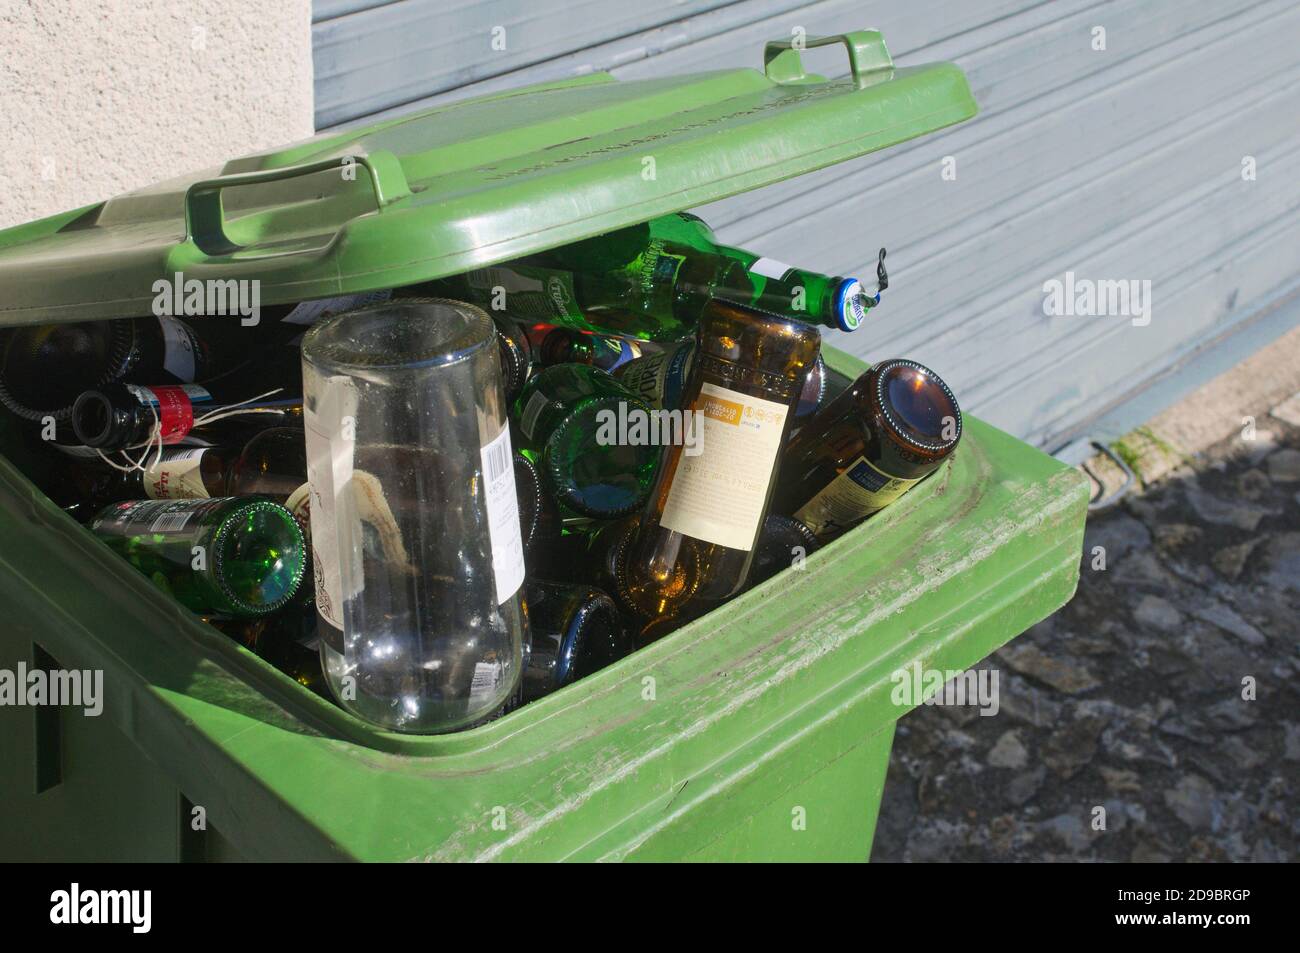 green glass garbage bin full of bottles Stock Photo